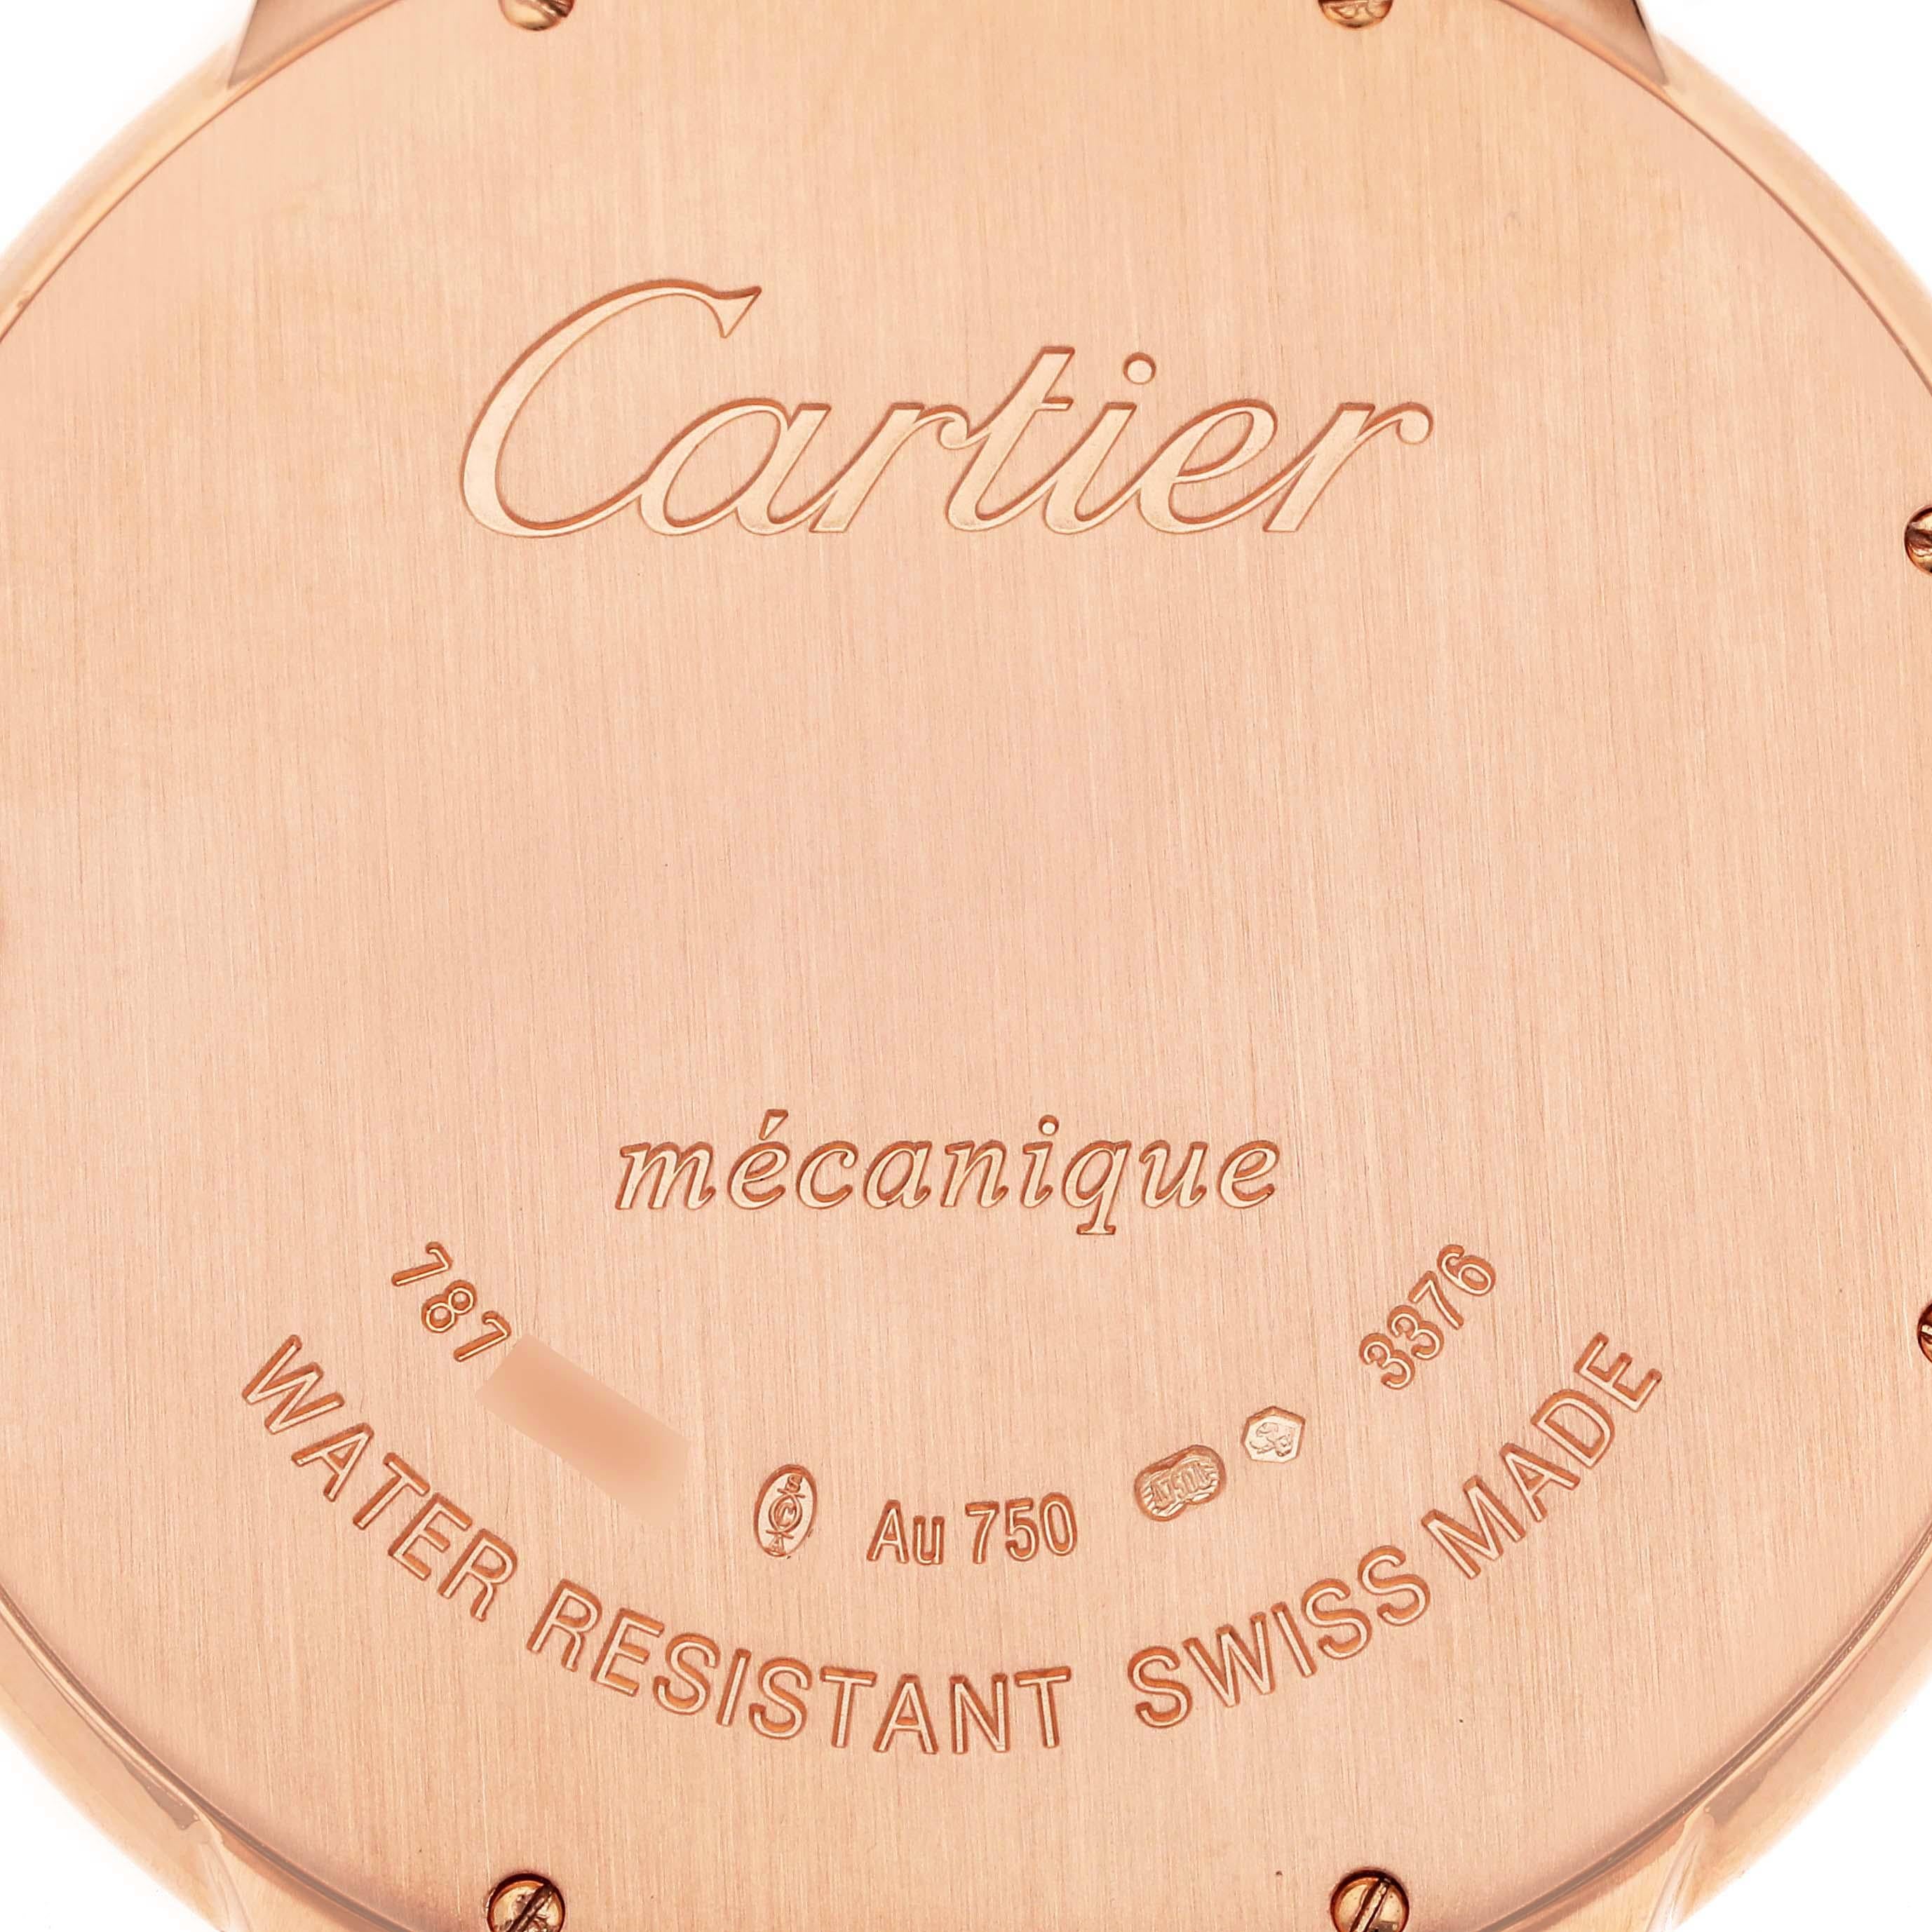 Cartier Ballon Bleu Ultra Thin 46 mm Rose Gold Mens Watch W6920054 For Sale 4